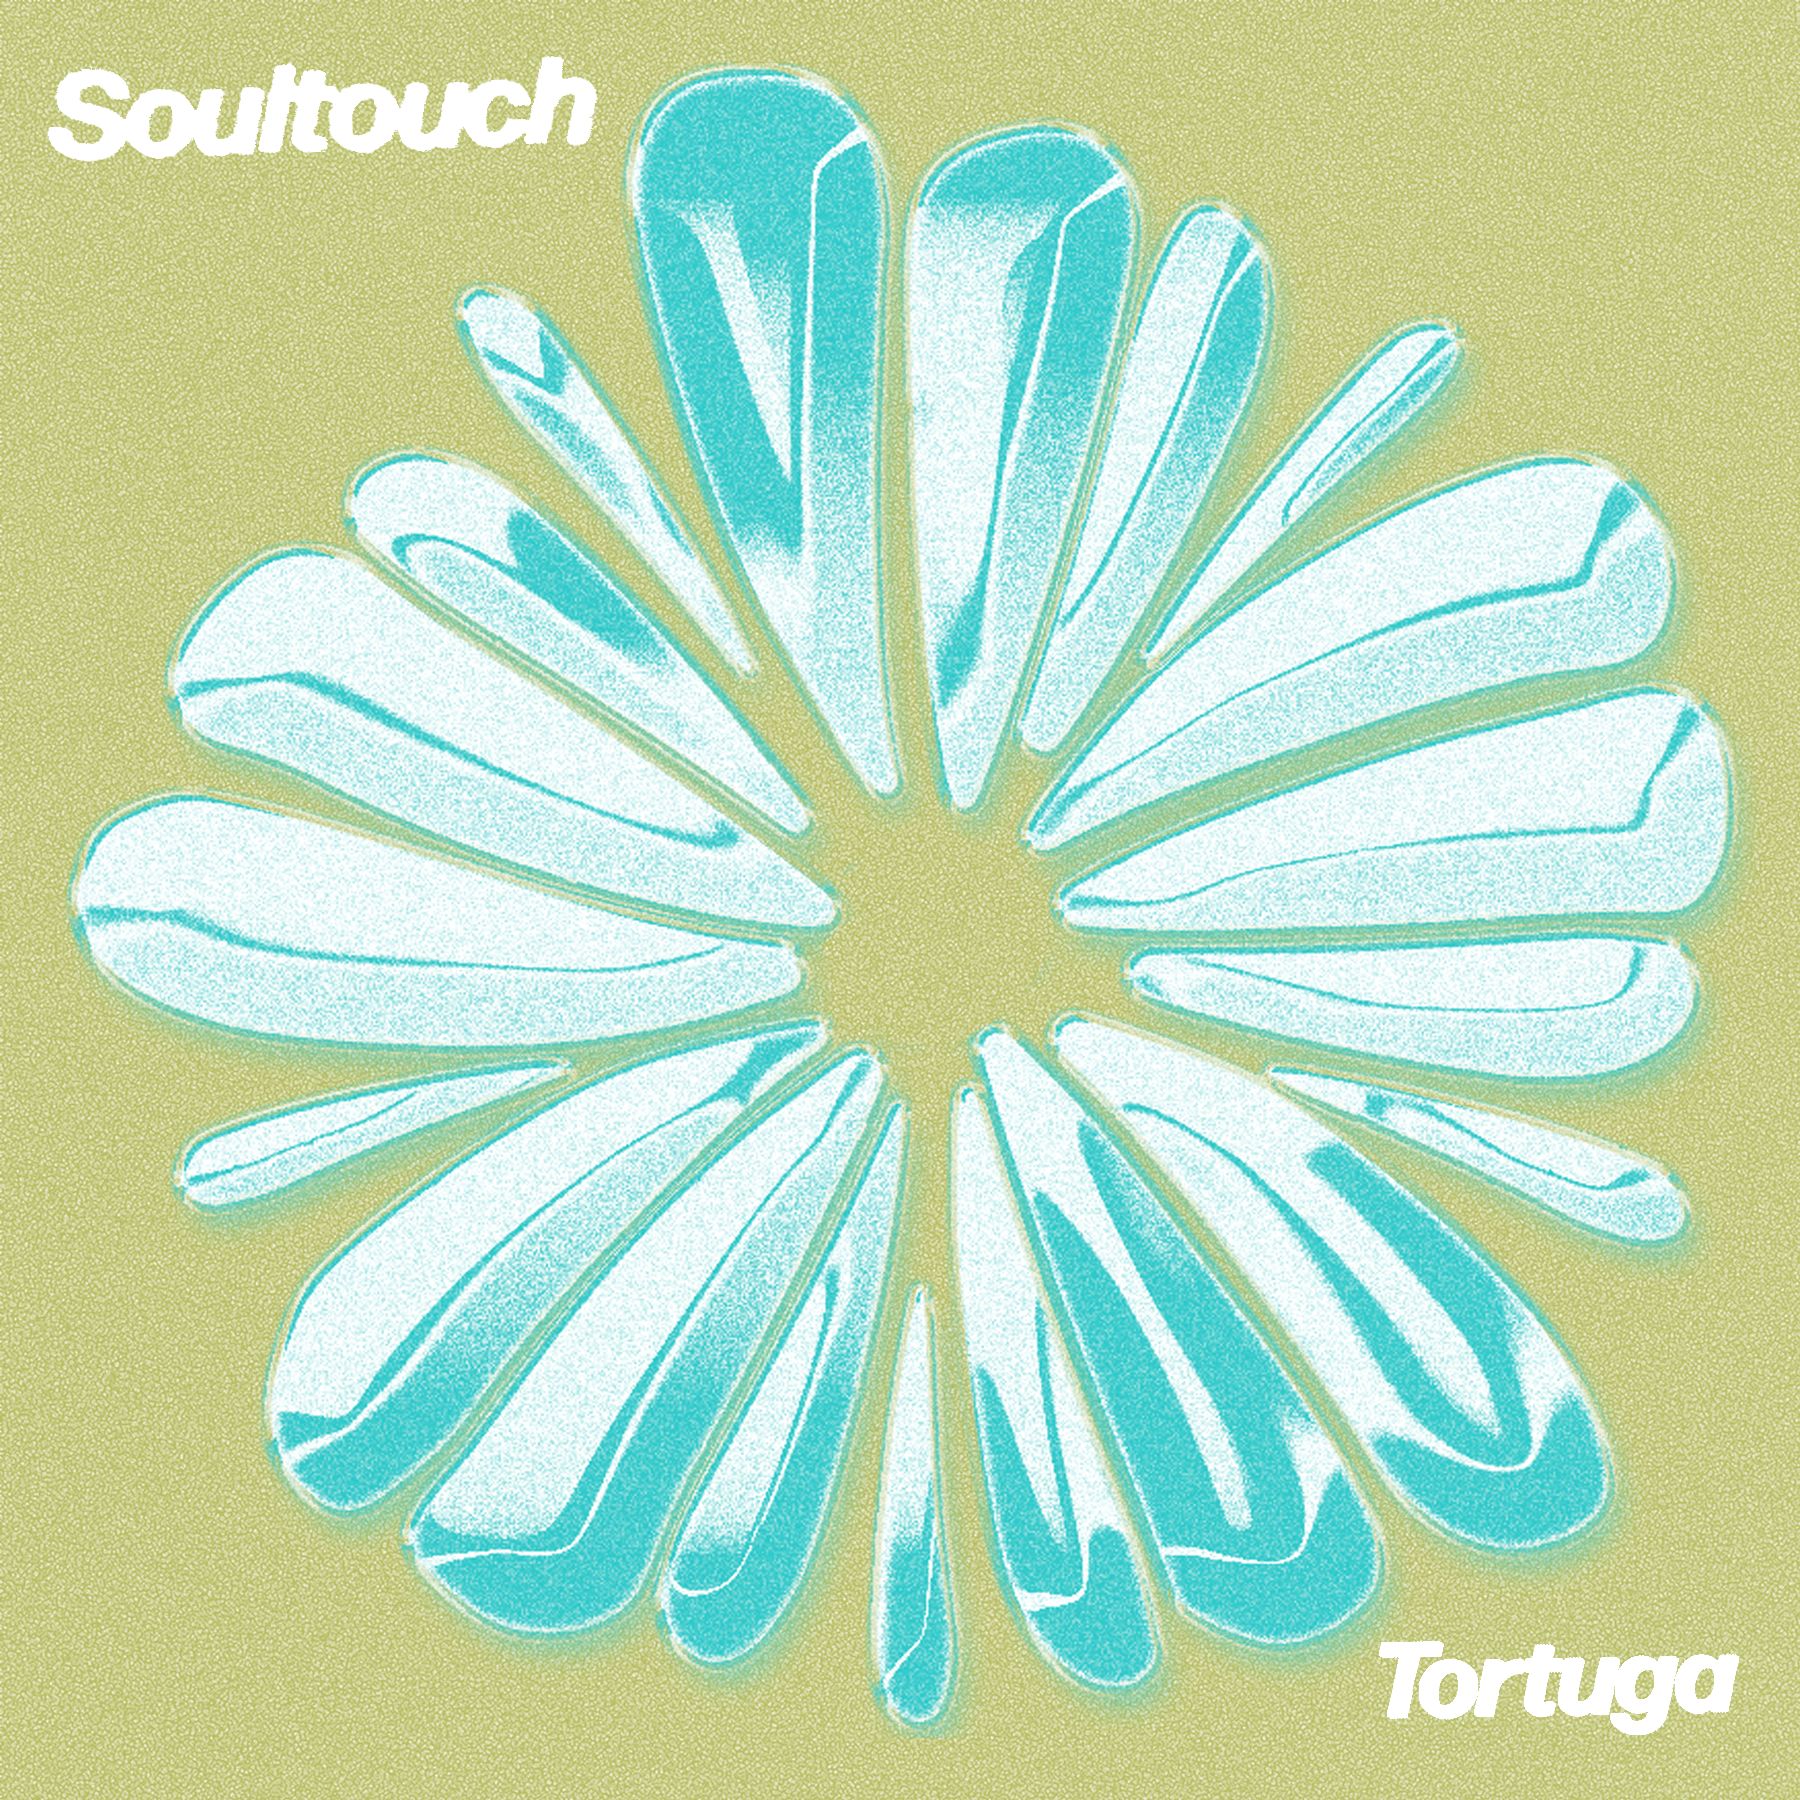 Stažení PREMIERE : Tortuga - Soultouch